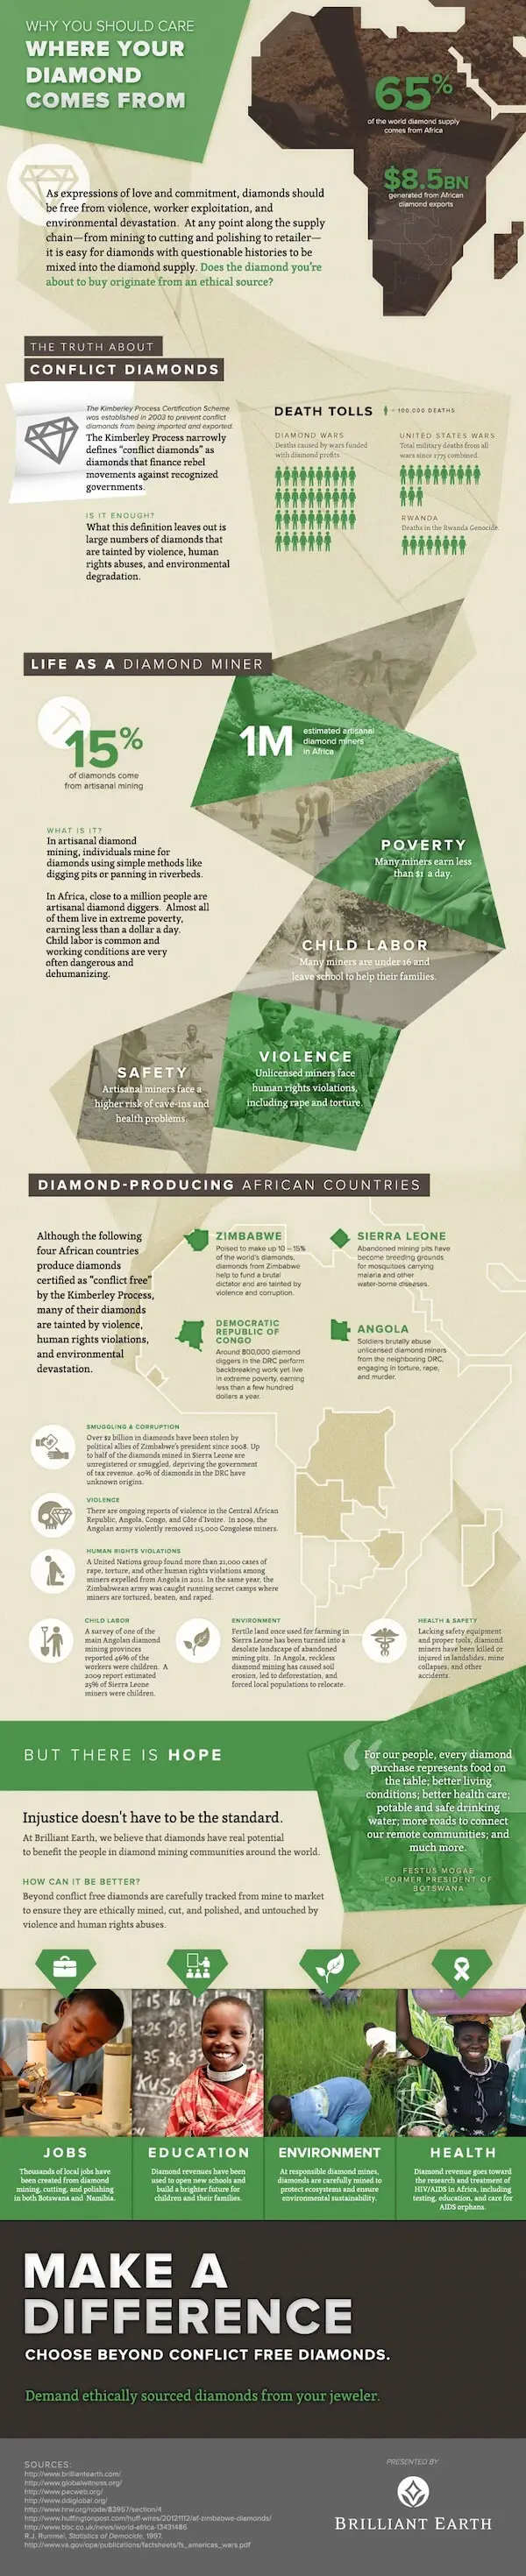 冲突钻石信息图表的真相